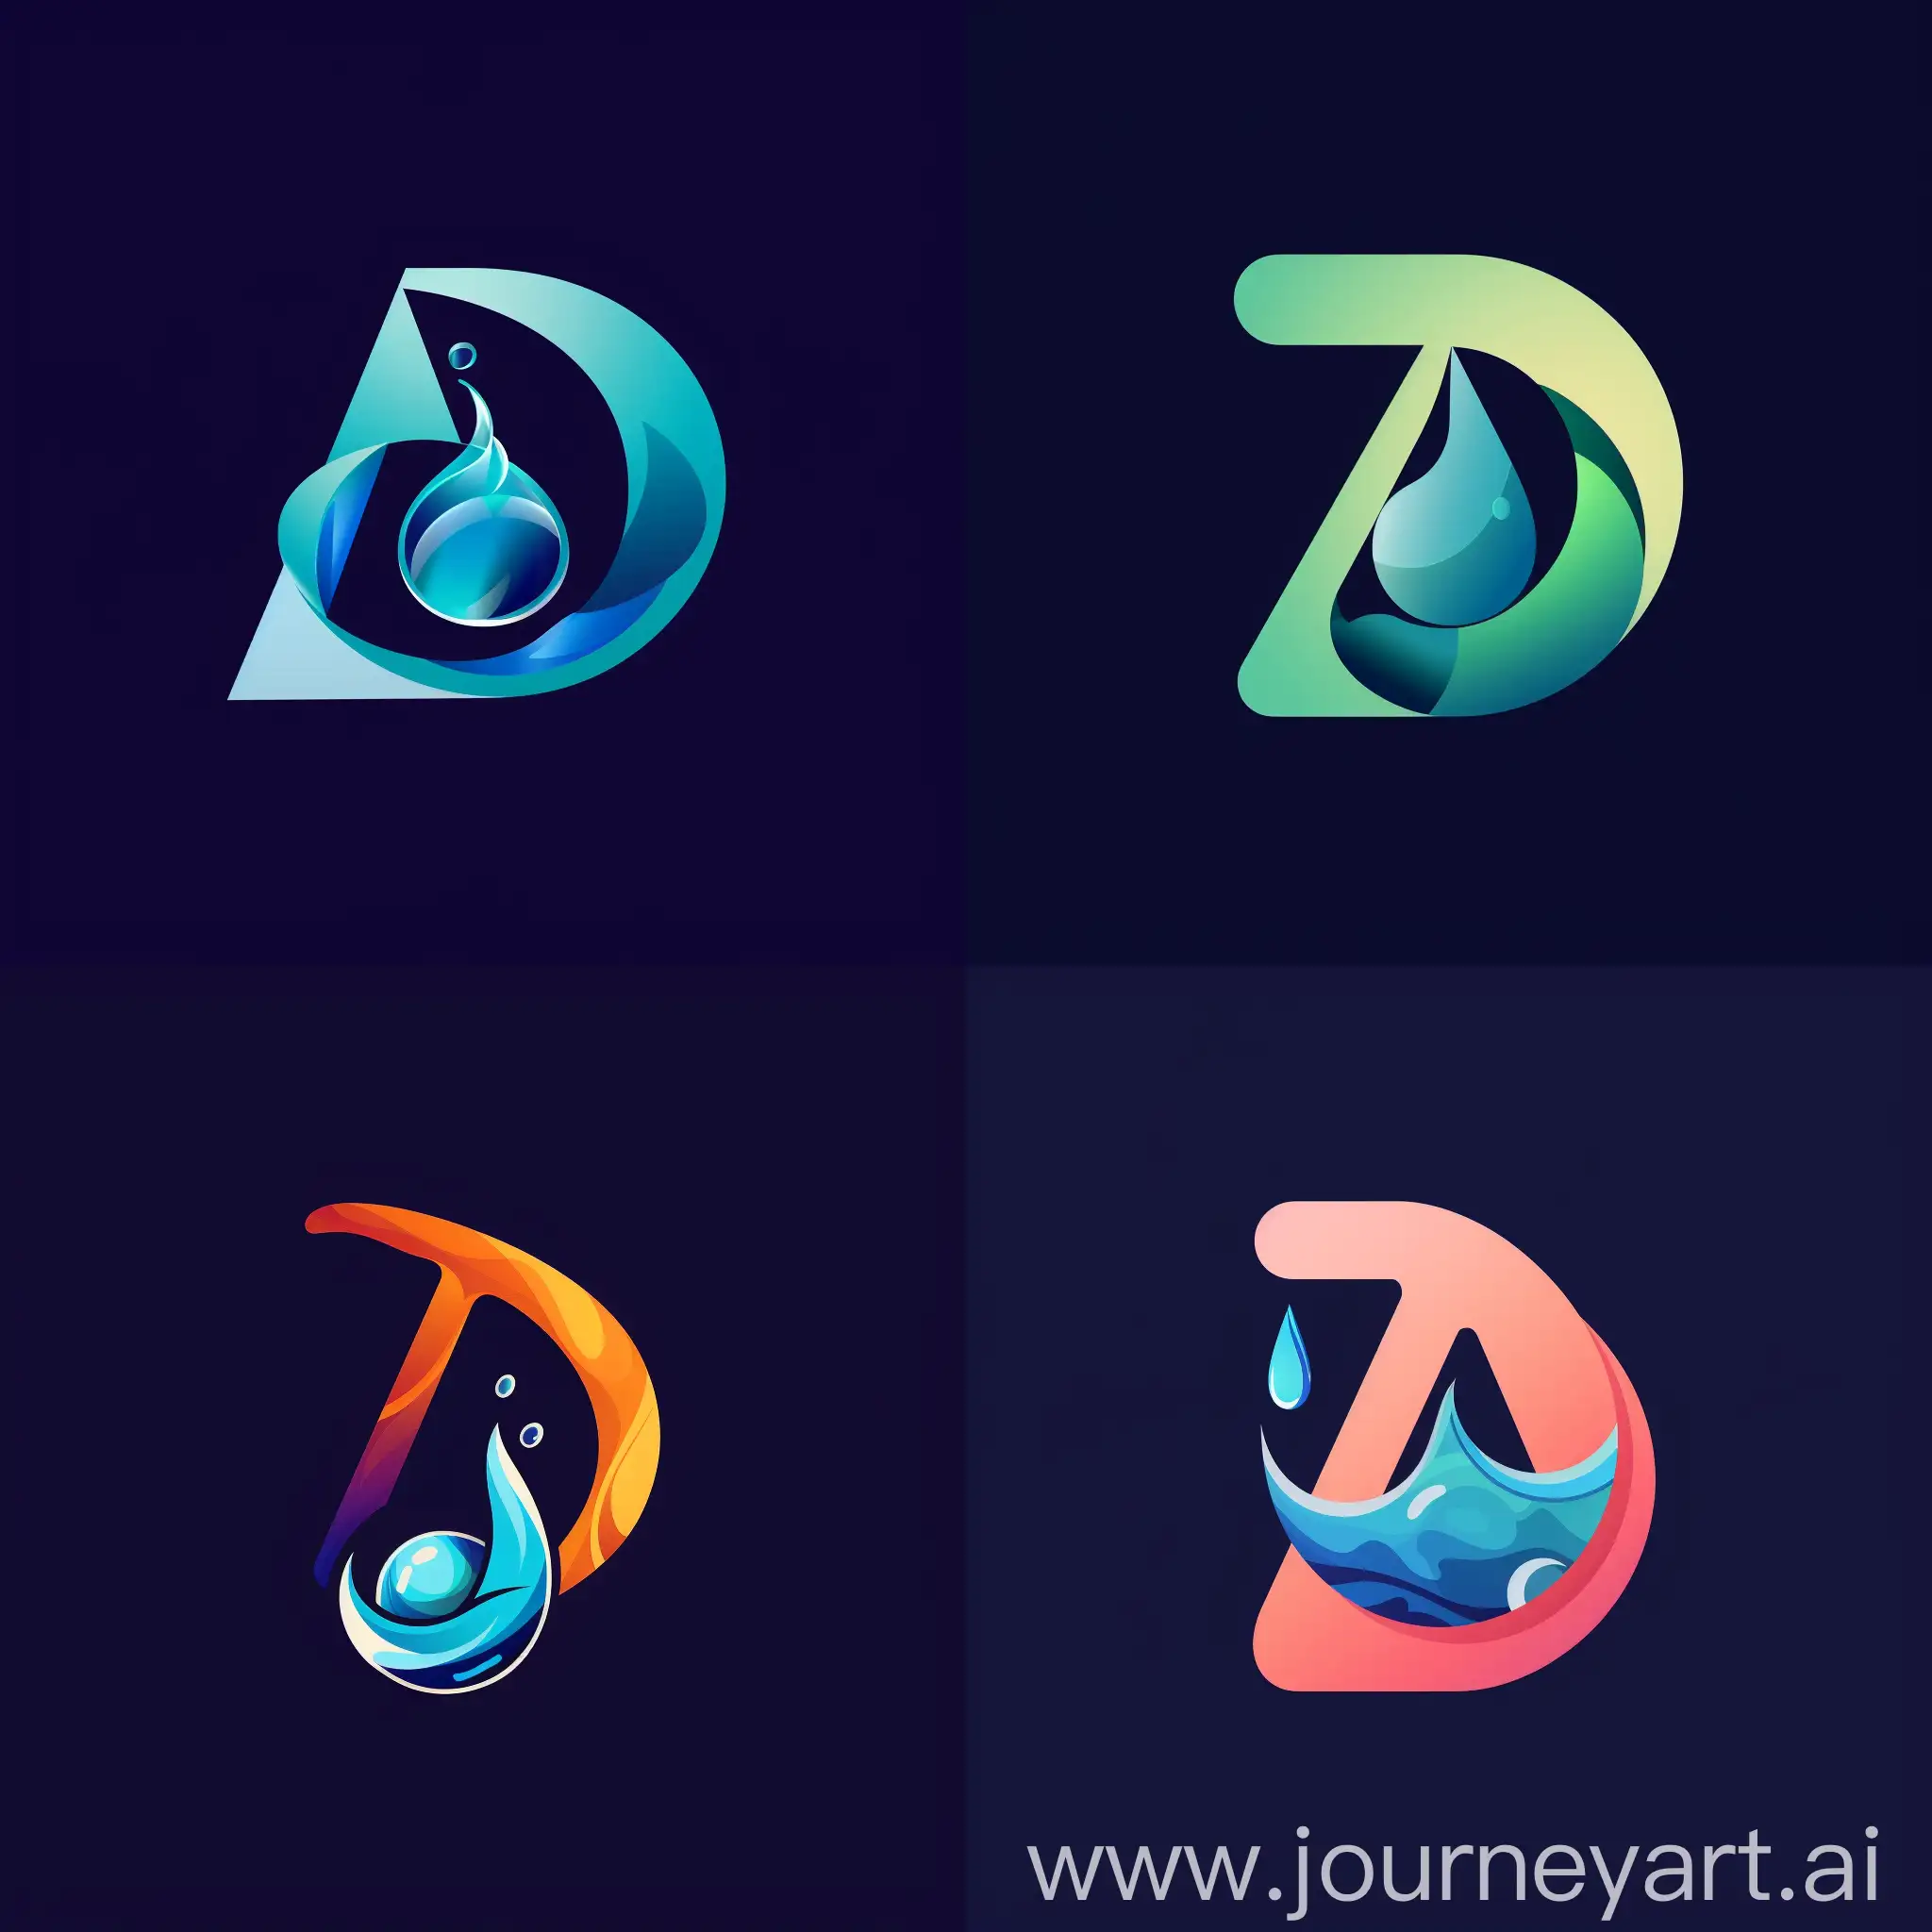 将字母A设计成水滴的形状，字母D设计成球形，两者有机结合成一个logo